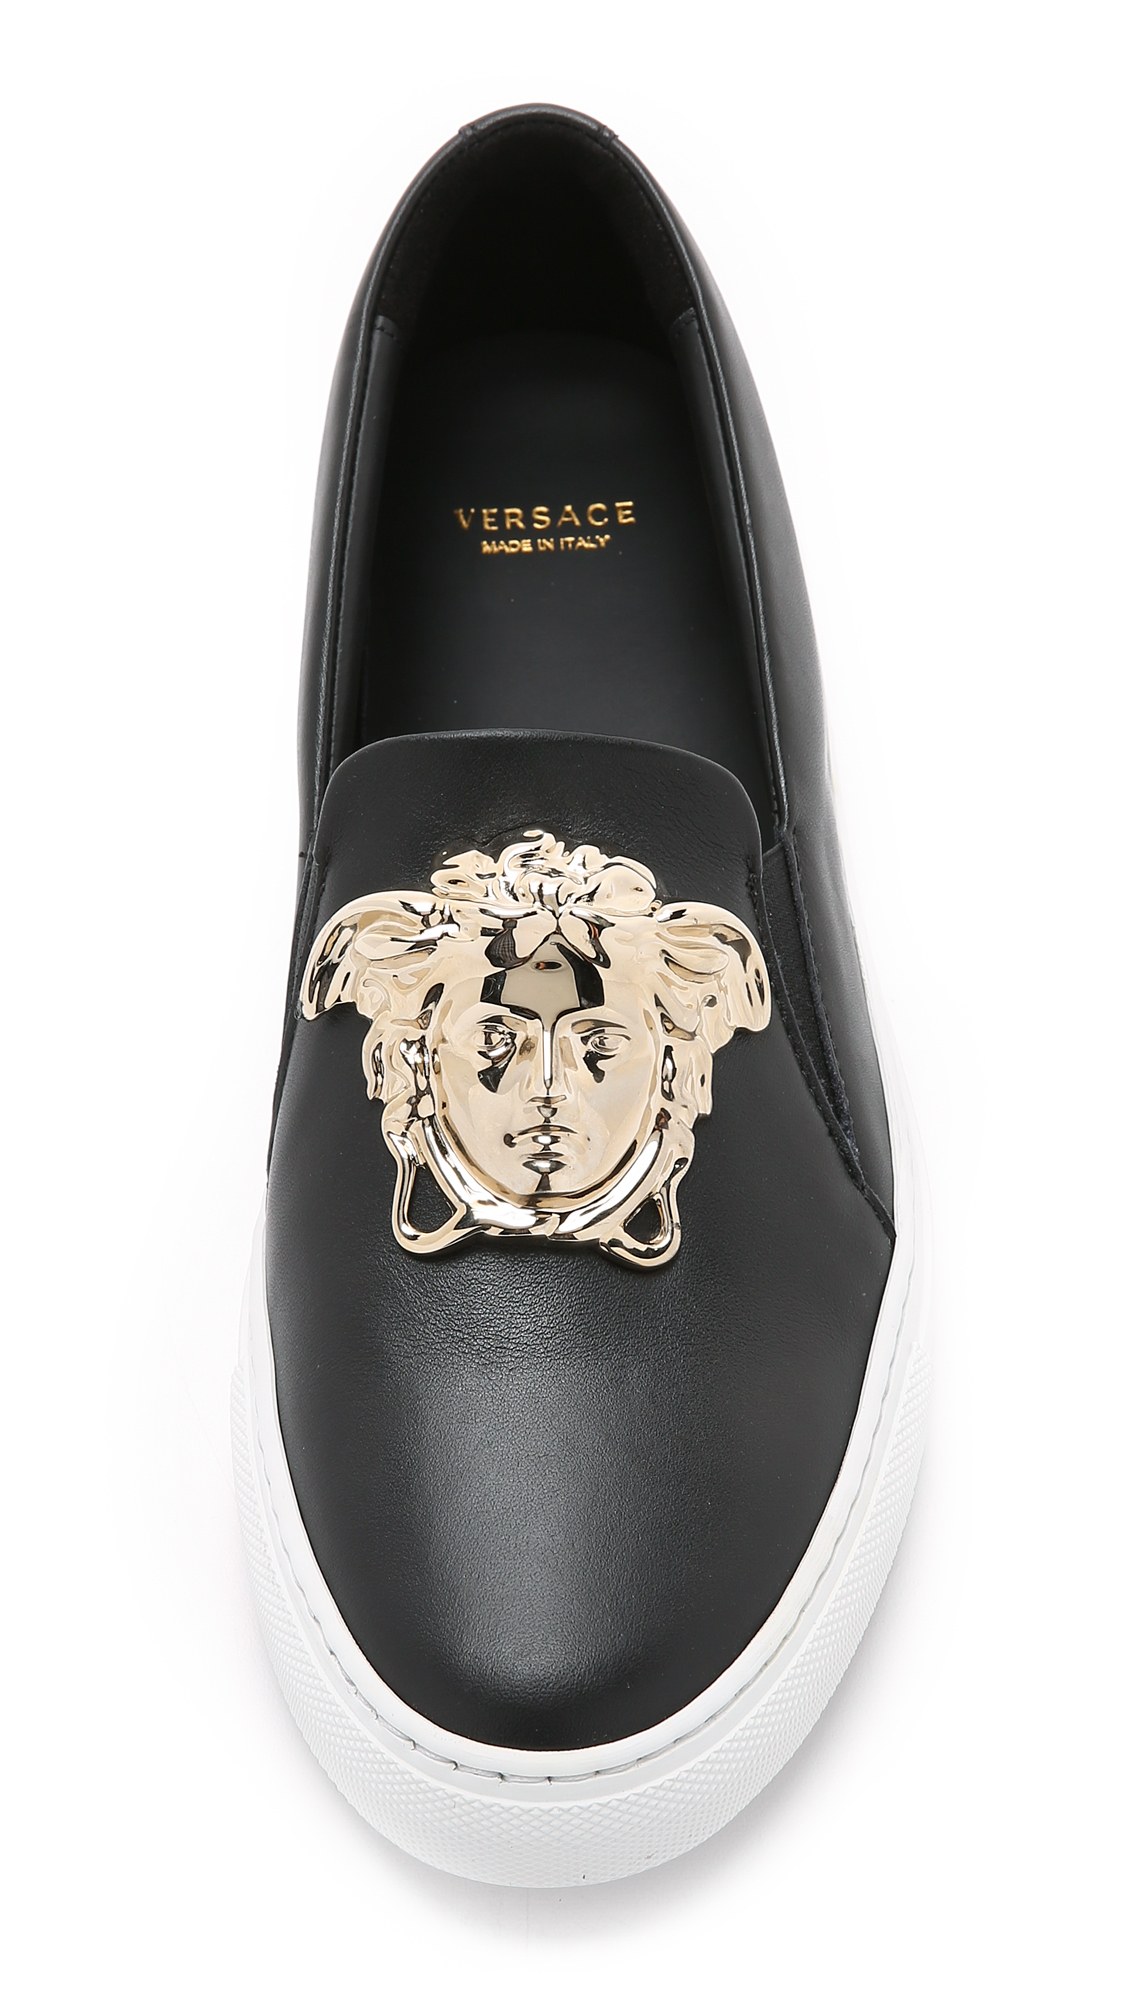 Lyst - Versace Medusa Sneakers in Black